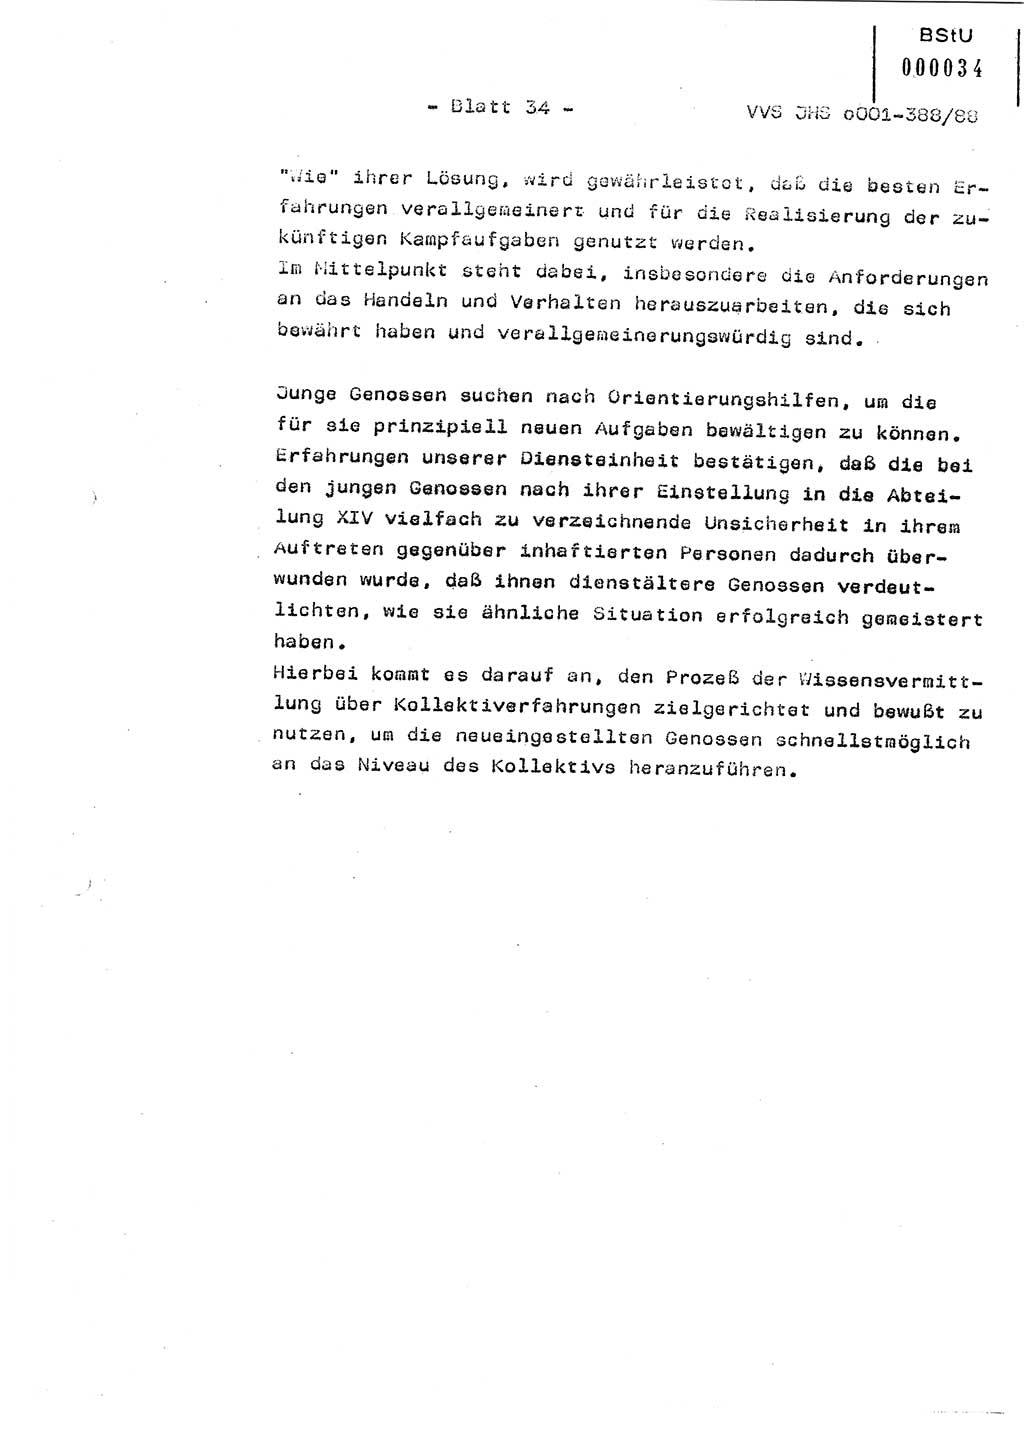 Diplomarbeit Hauptmann Heinz Brixel (Abt. ⅩⅣ), Ministerium für Staatssicherheit (MfS) [Deutsche Demokratische Republik (DDR)], Juristische Hochschule (JHS), Vertrauliche Verschlußsache (VVS) o001-388/88, Potsdam 1988, Blatt 34 (Dipl.-Arb. MfS DDR JHS VVS o001-388/88 1988, Bl. 34)